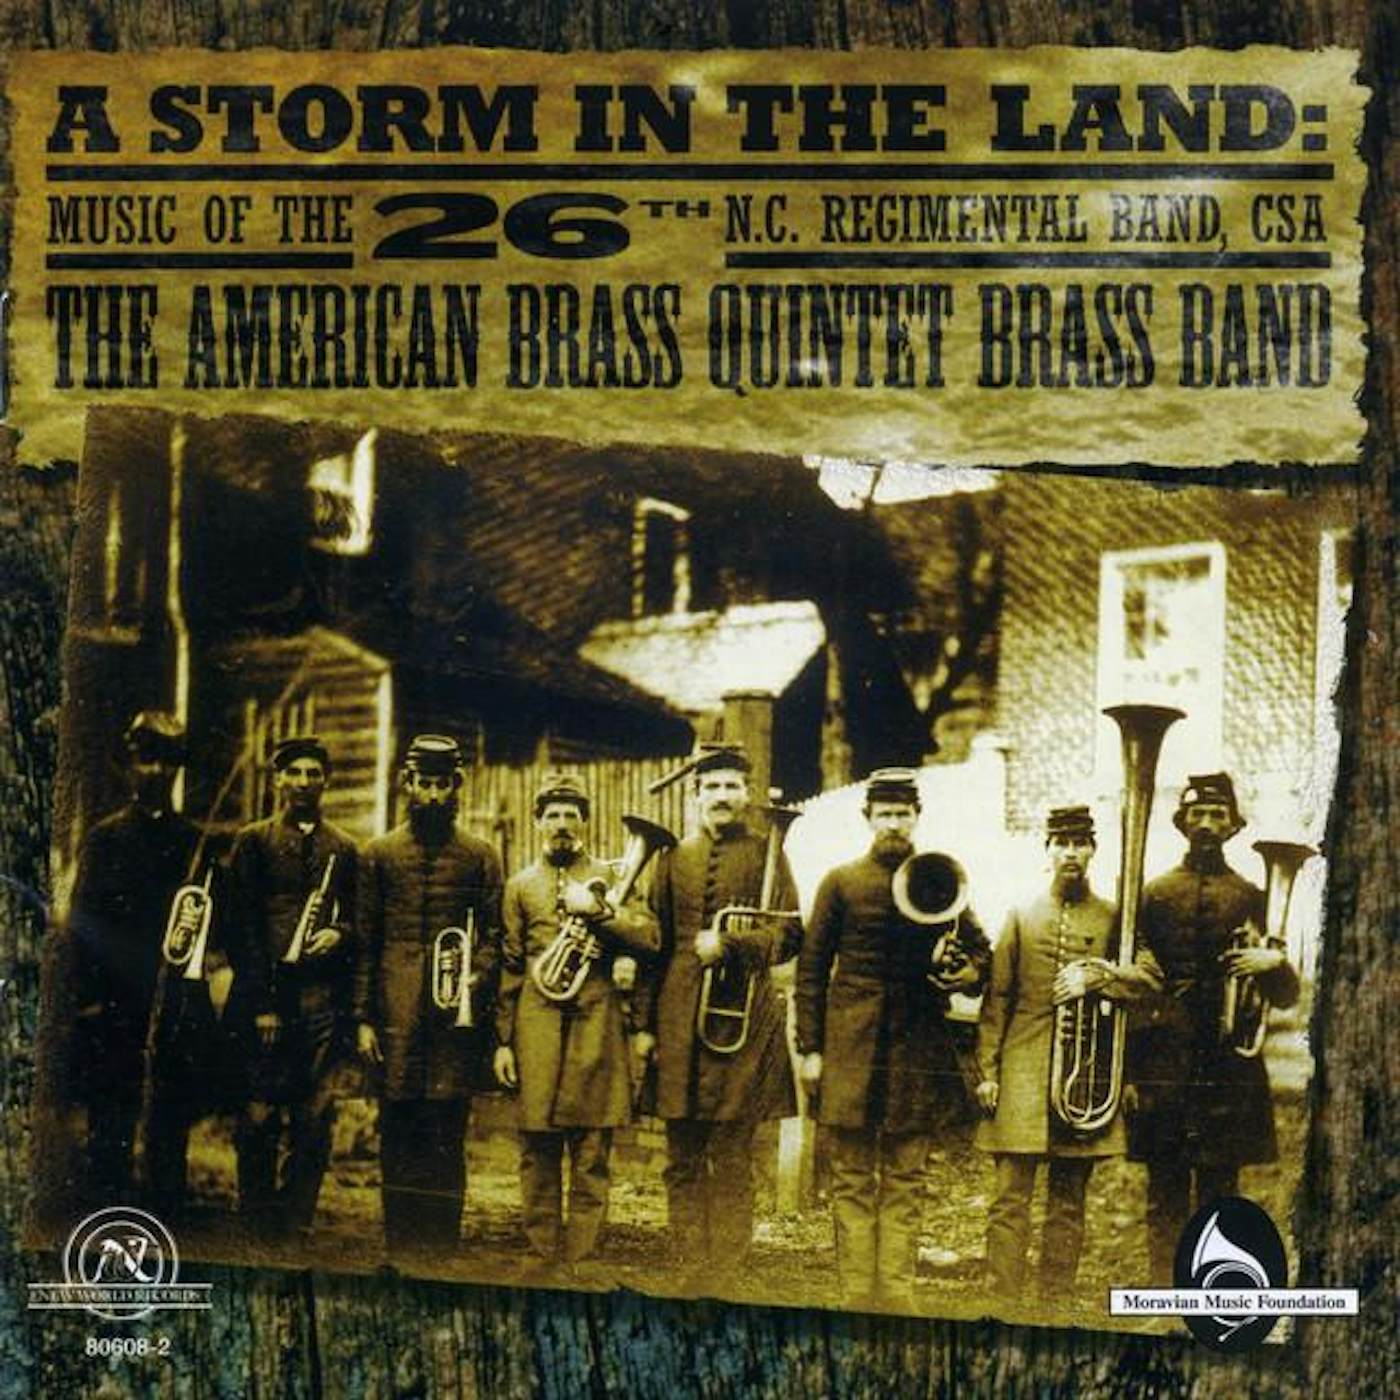 American Brass Quintet Brass Band